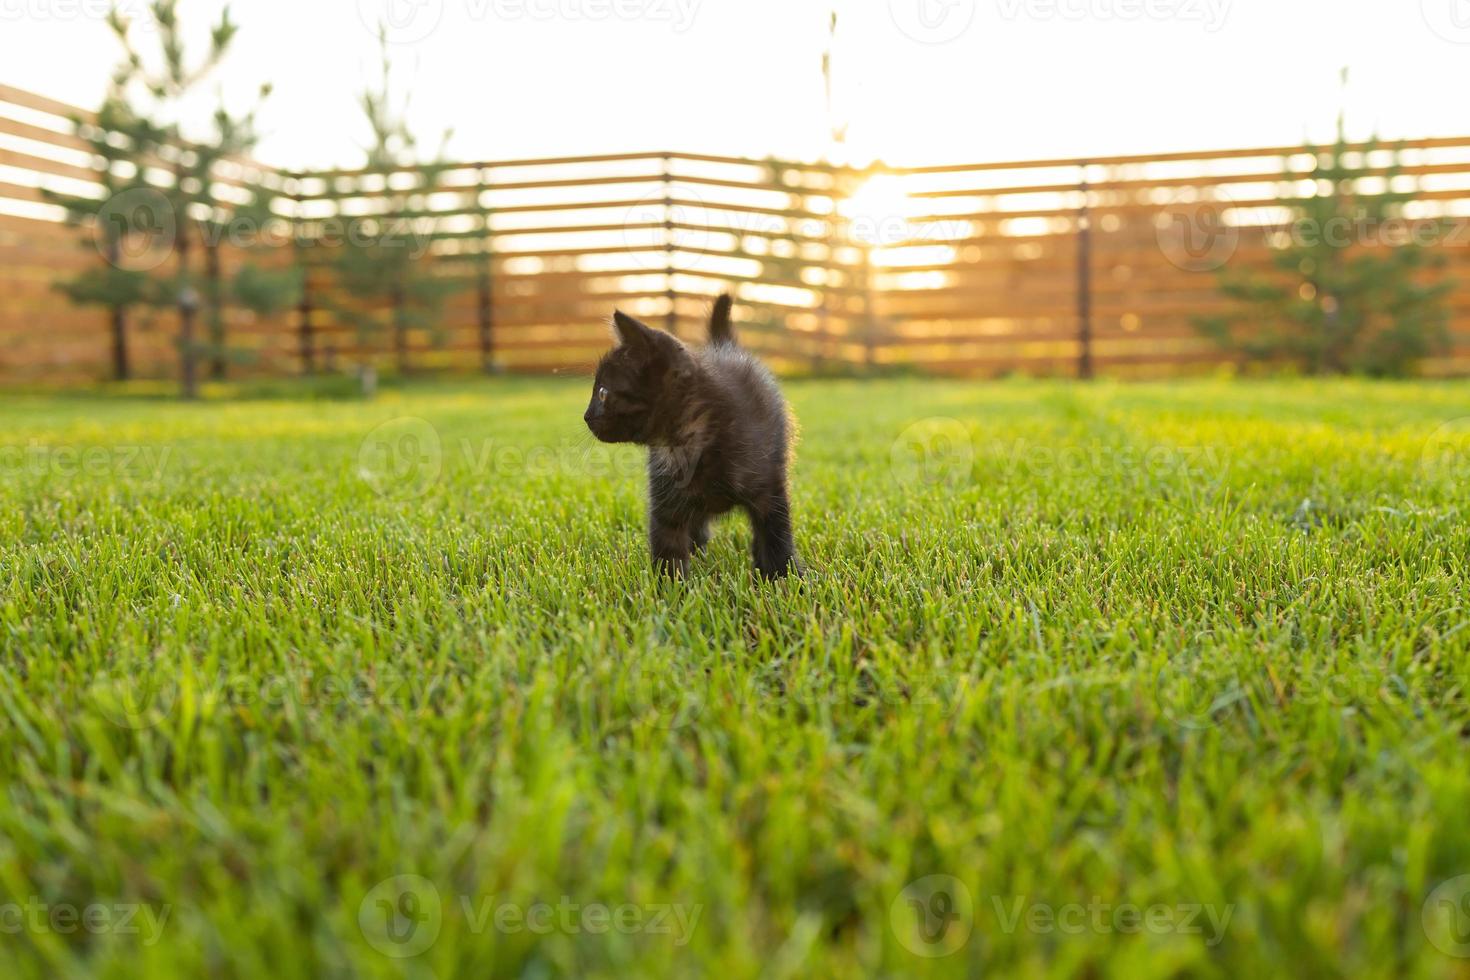 svart nyfiket kattunge utomhus i de gräs - sällskapsdjur och inhemsk katt begrepp. kopia Plats och plats för reklam foto